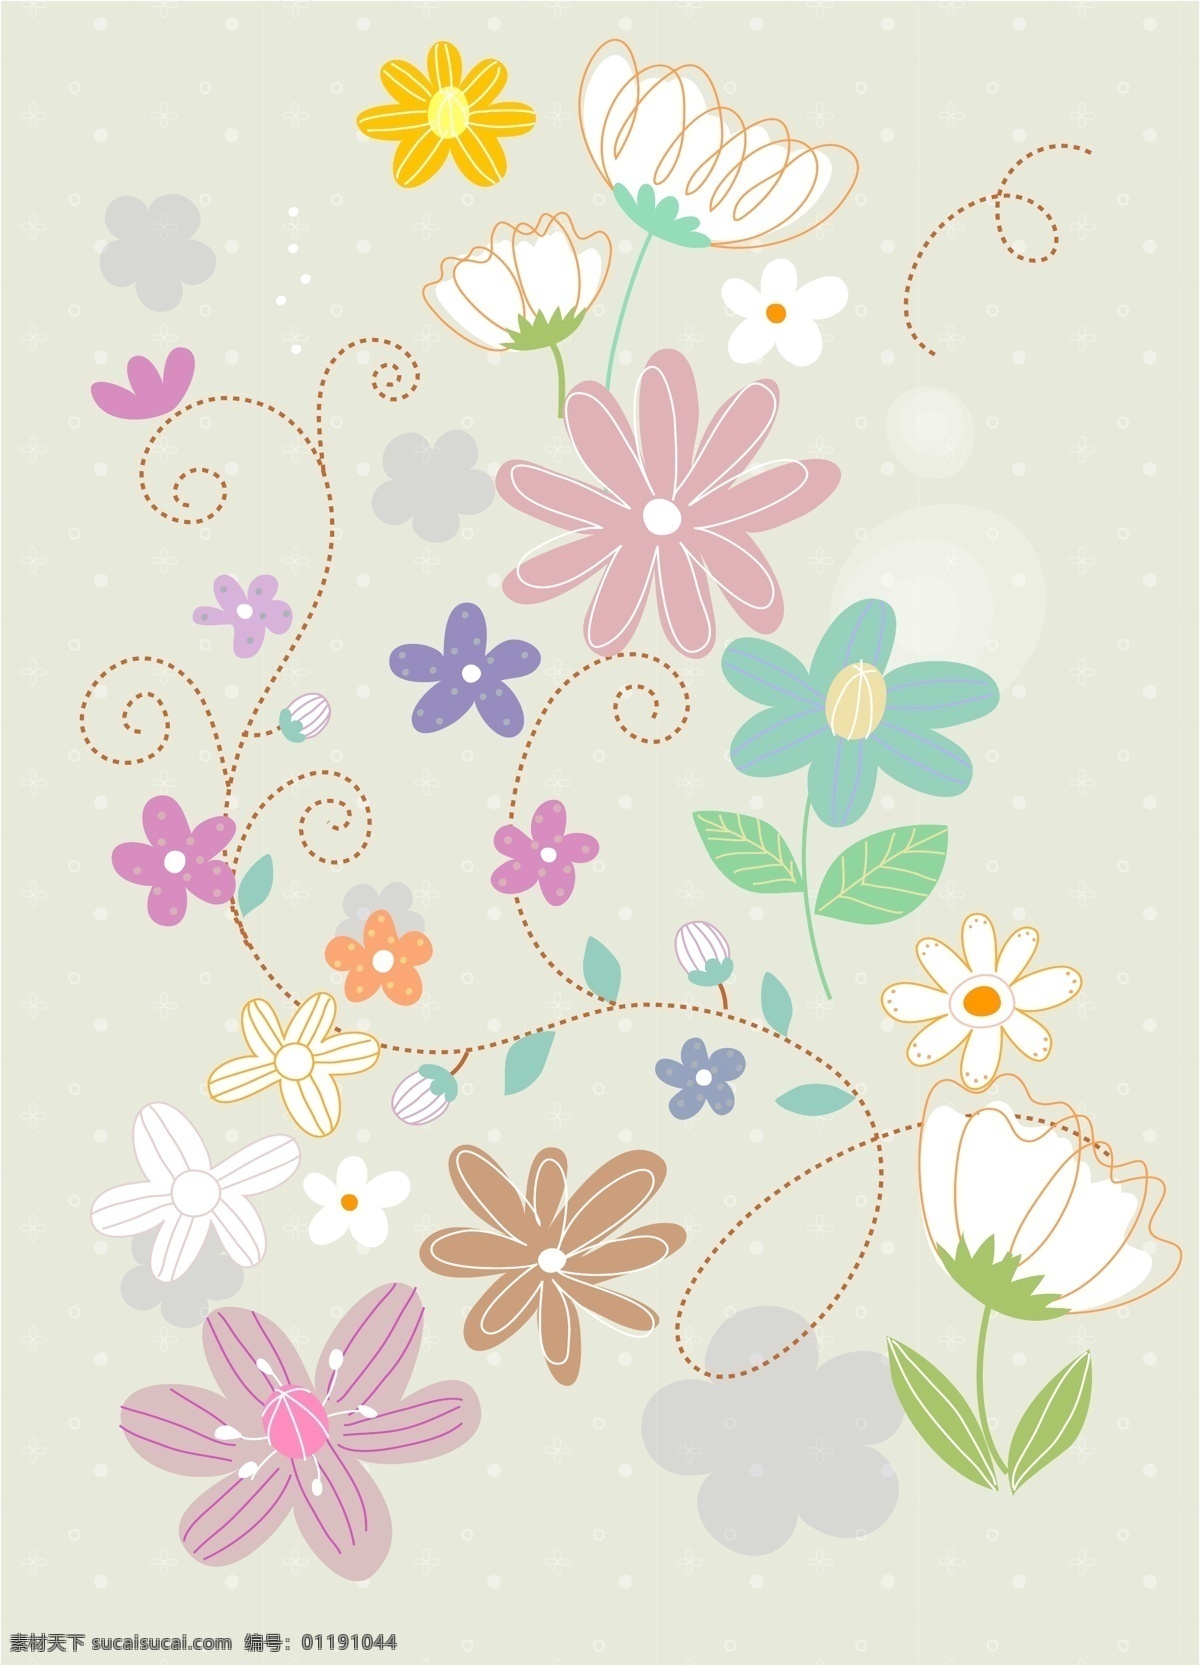 矢量 花朵 图案 背景 时尚花纹 矢量花朵 时尚潮流花纹 矢量花卉植物 背景图案 花草树木 生物世界 矢量素材 白色